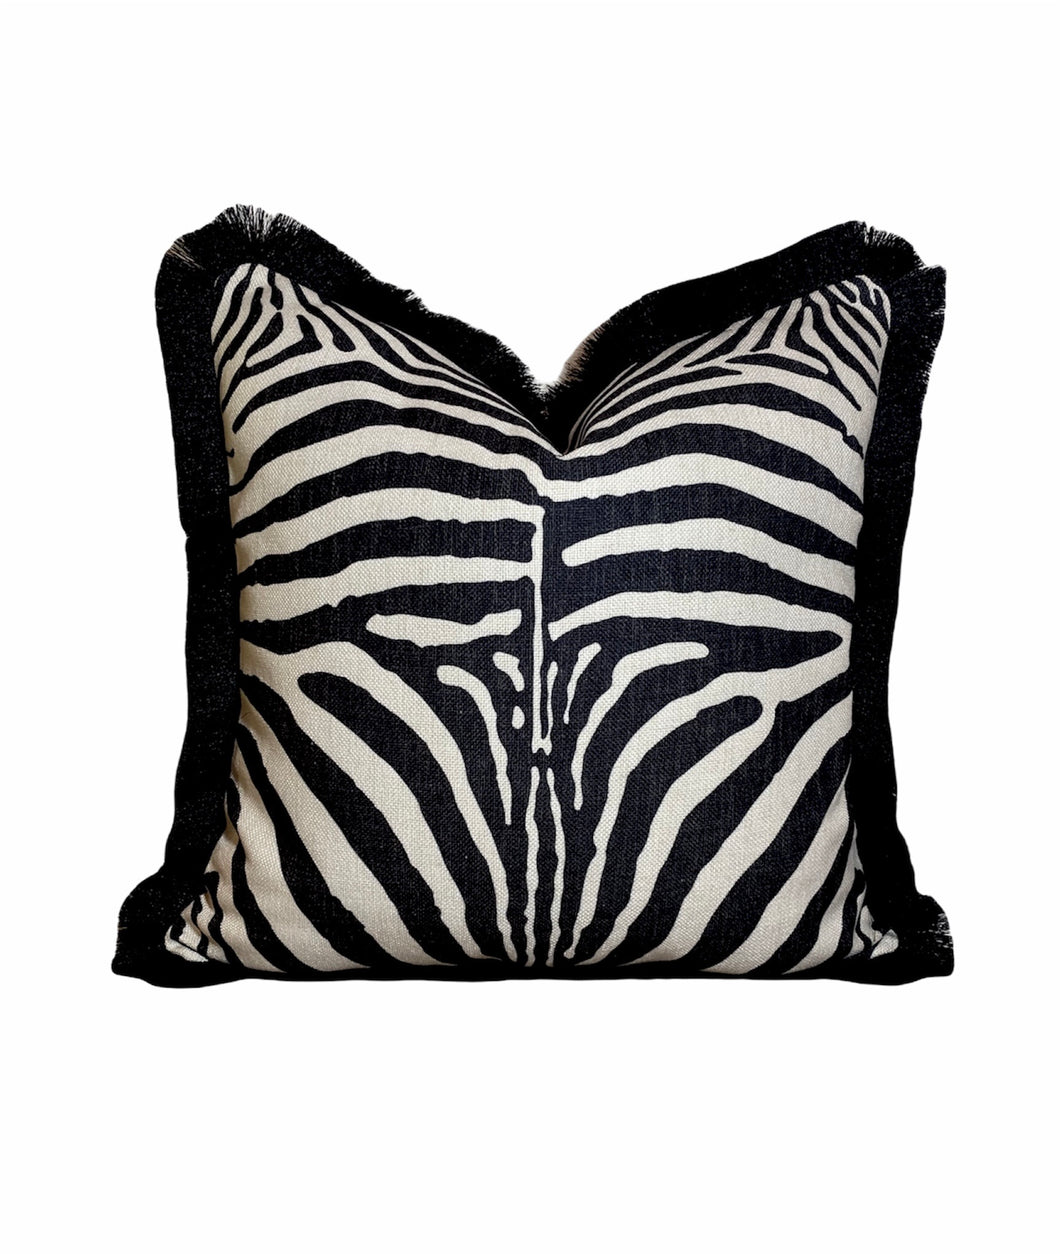 Cuscino zebrato Cuscino con stampa animalier in lino bianco e nero con frange nere Cuscino rustico